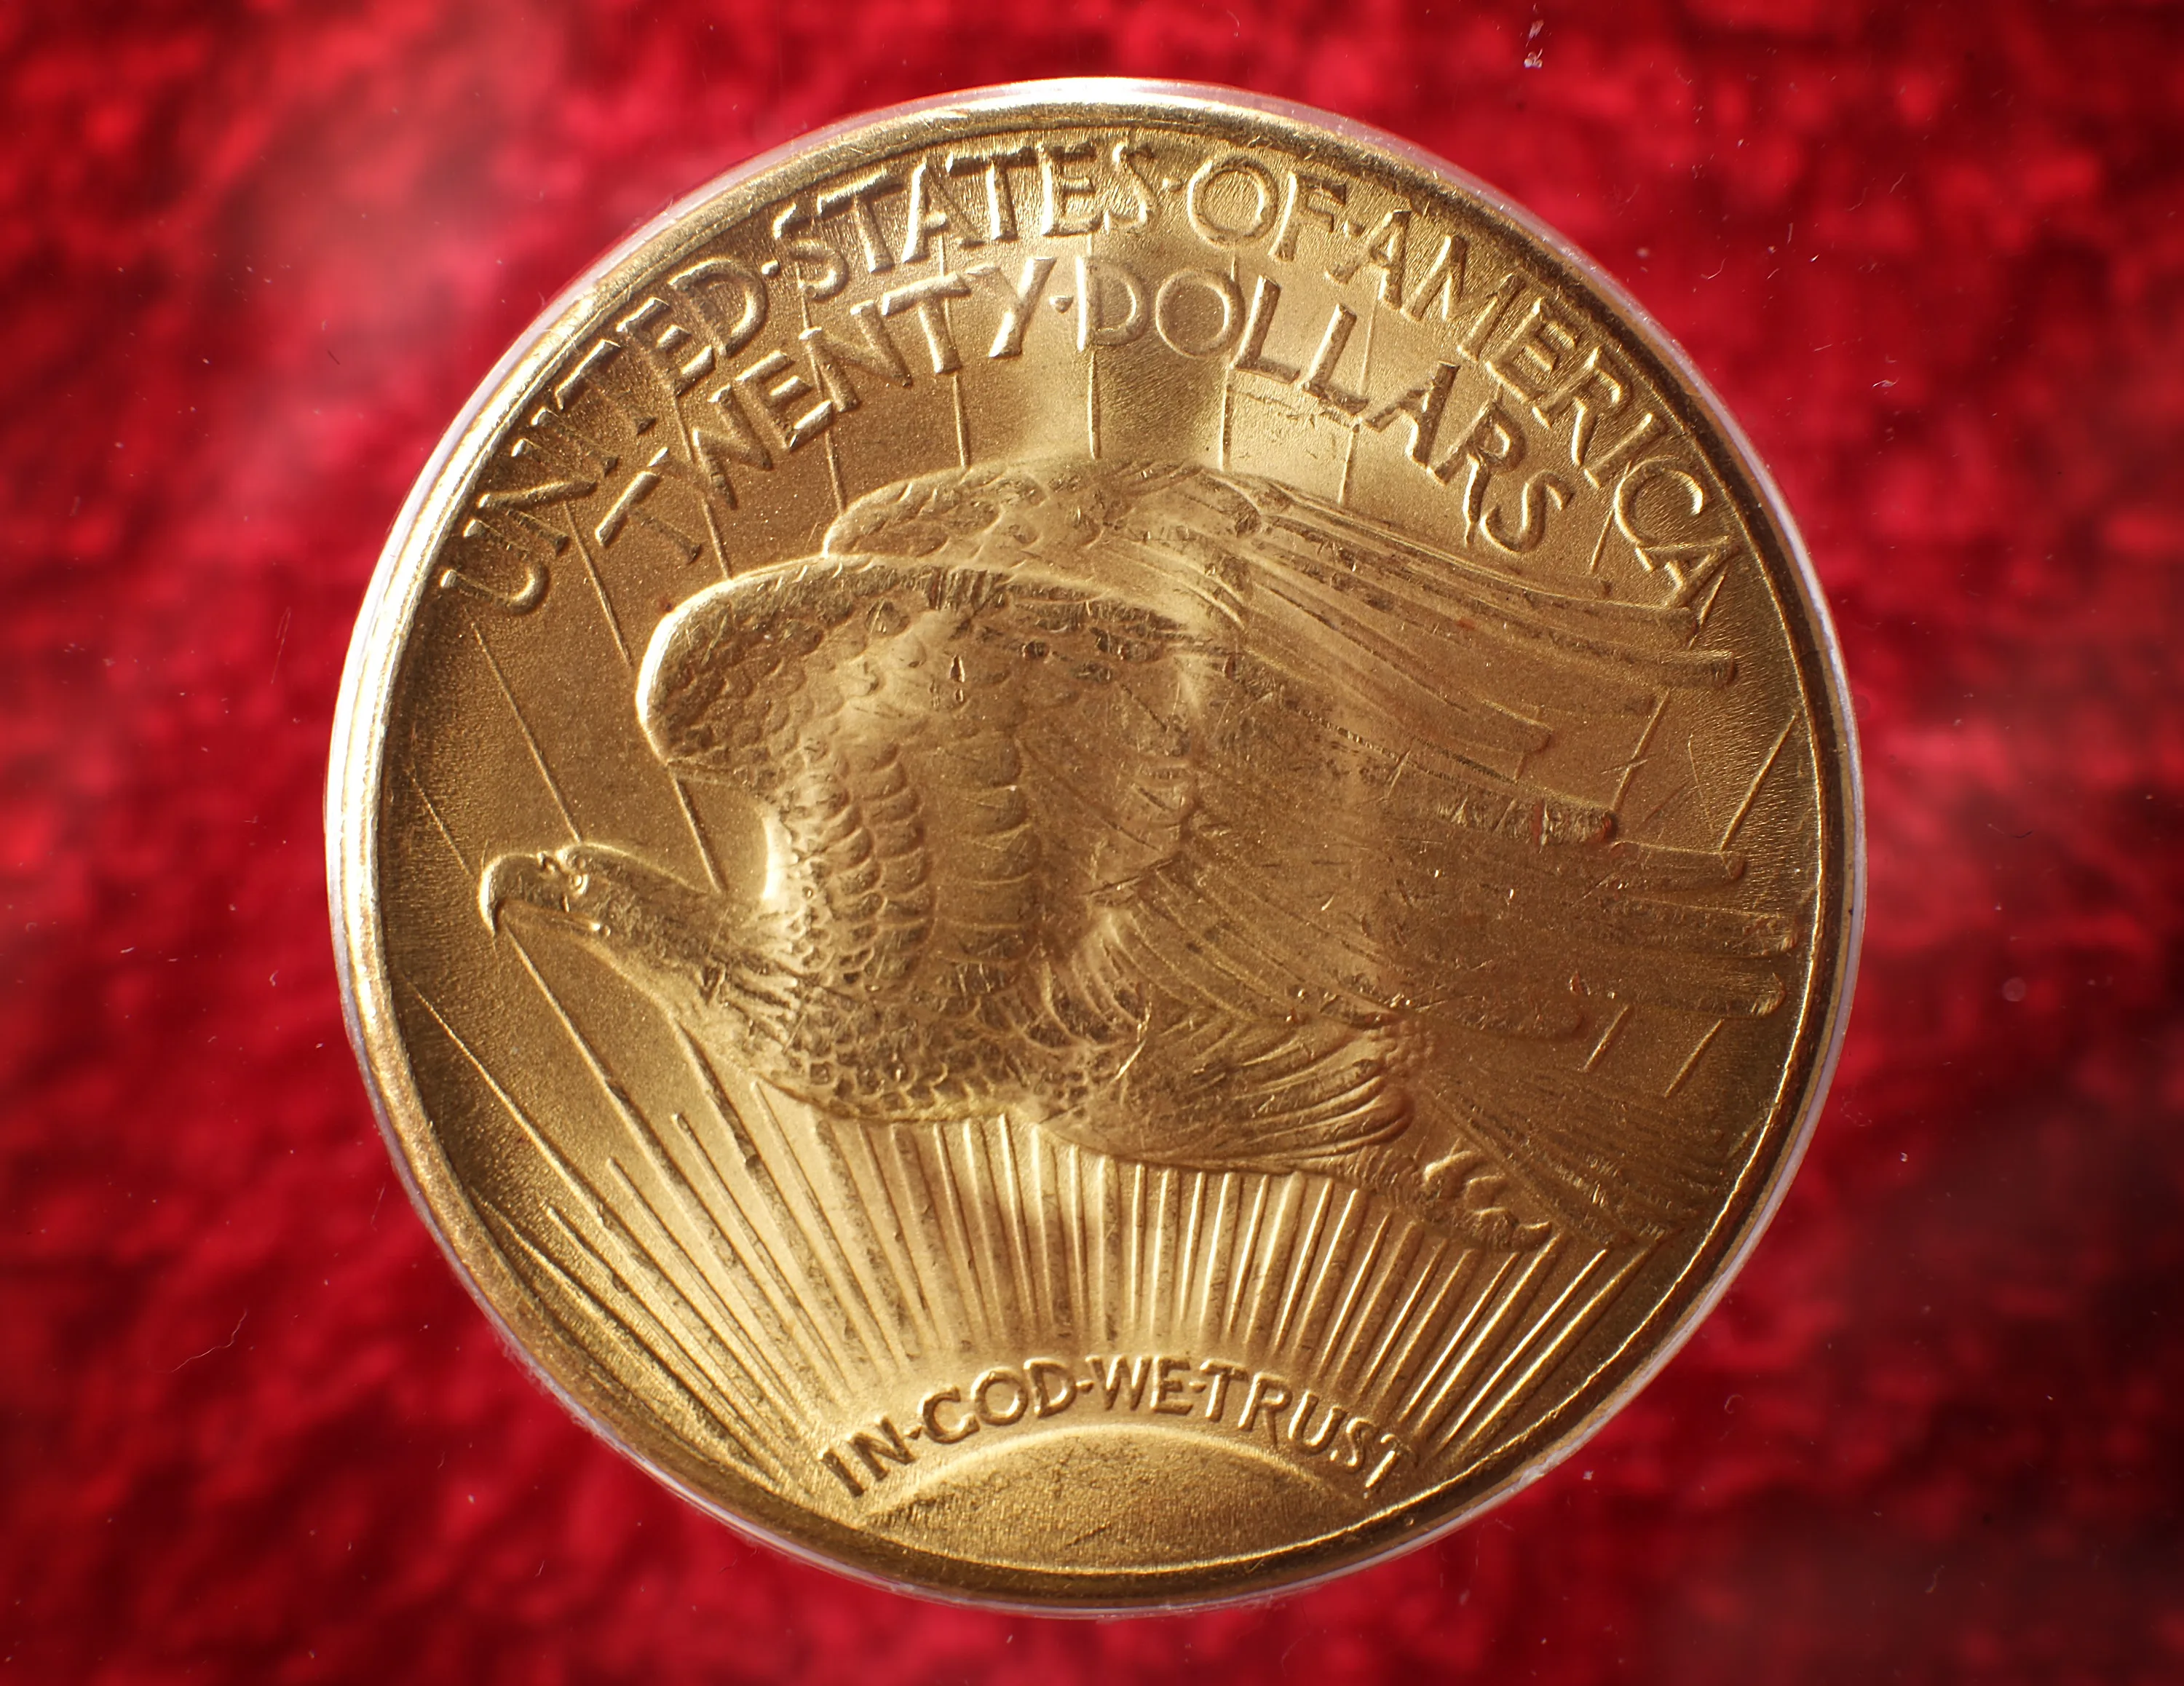 Сколько стоит дорогая монета. Двойной Орел 1933 года. Самая дорогая Золотая монета США. Самая дорогая монета вммире. Самая дорогая манжета в мире.